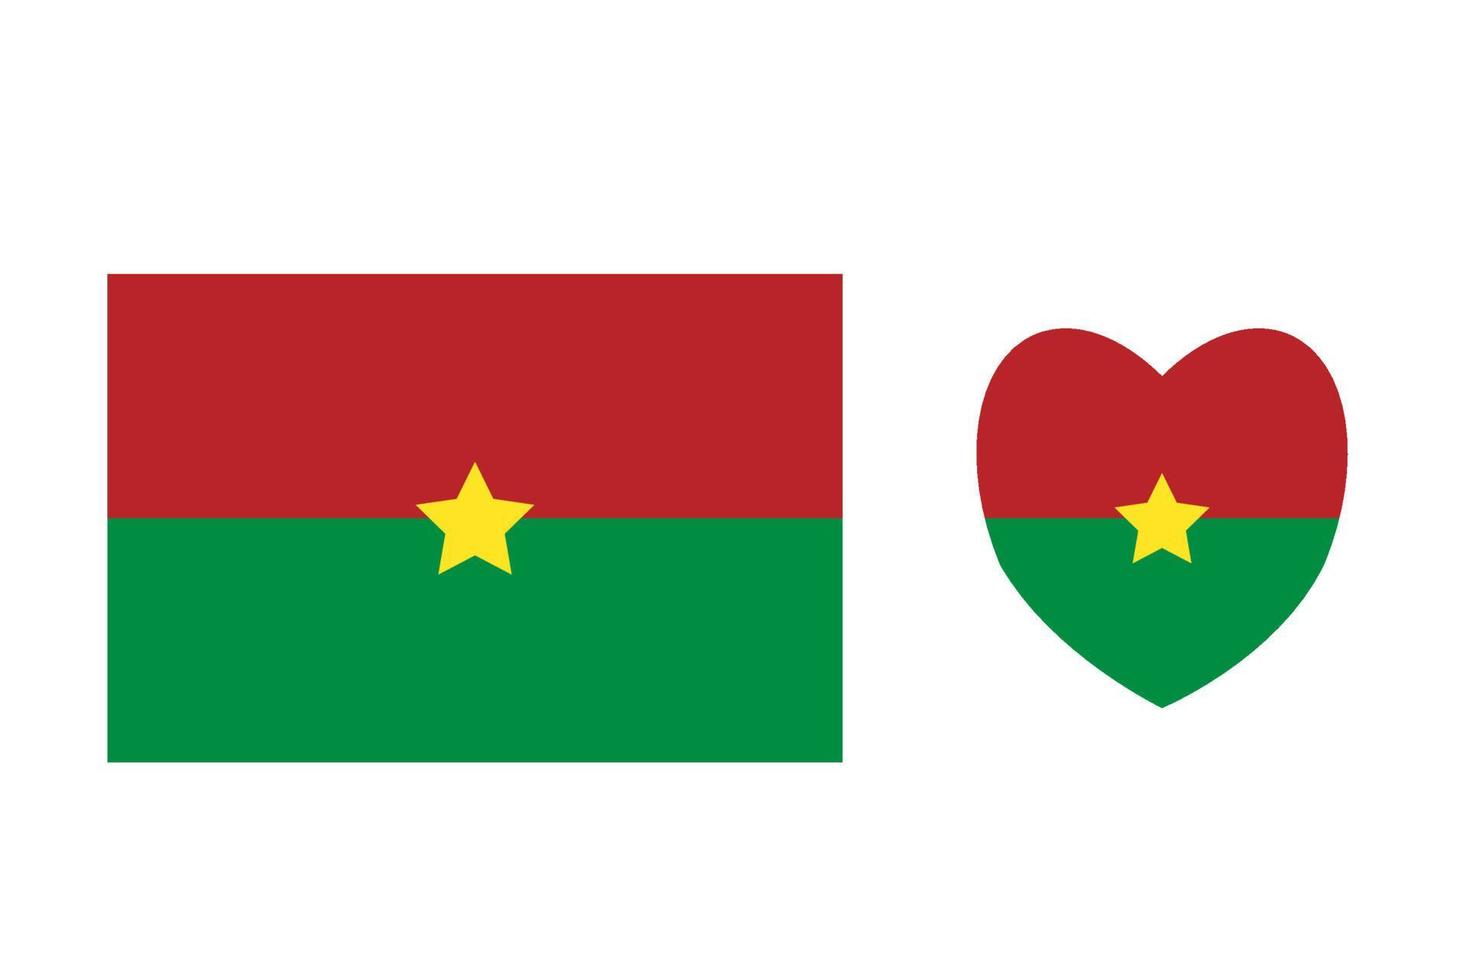 Burkina Faso officially flag Free Vector